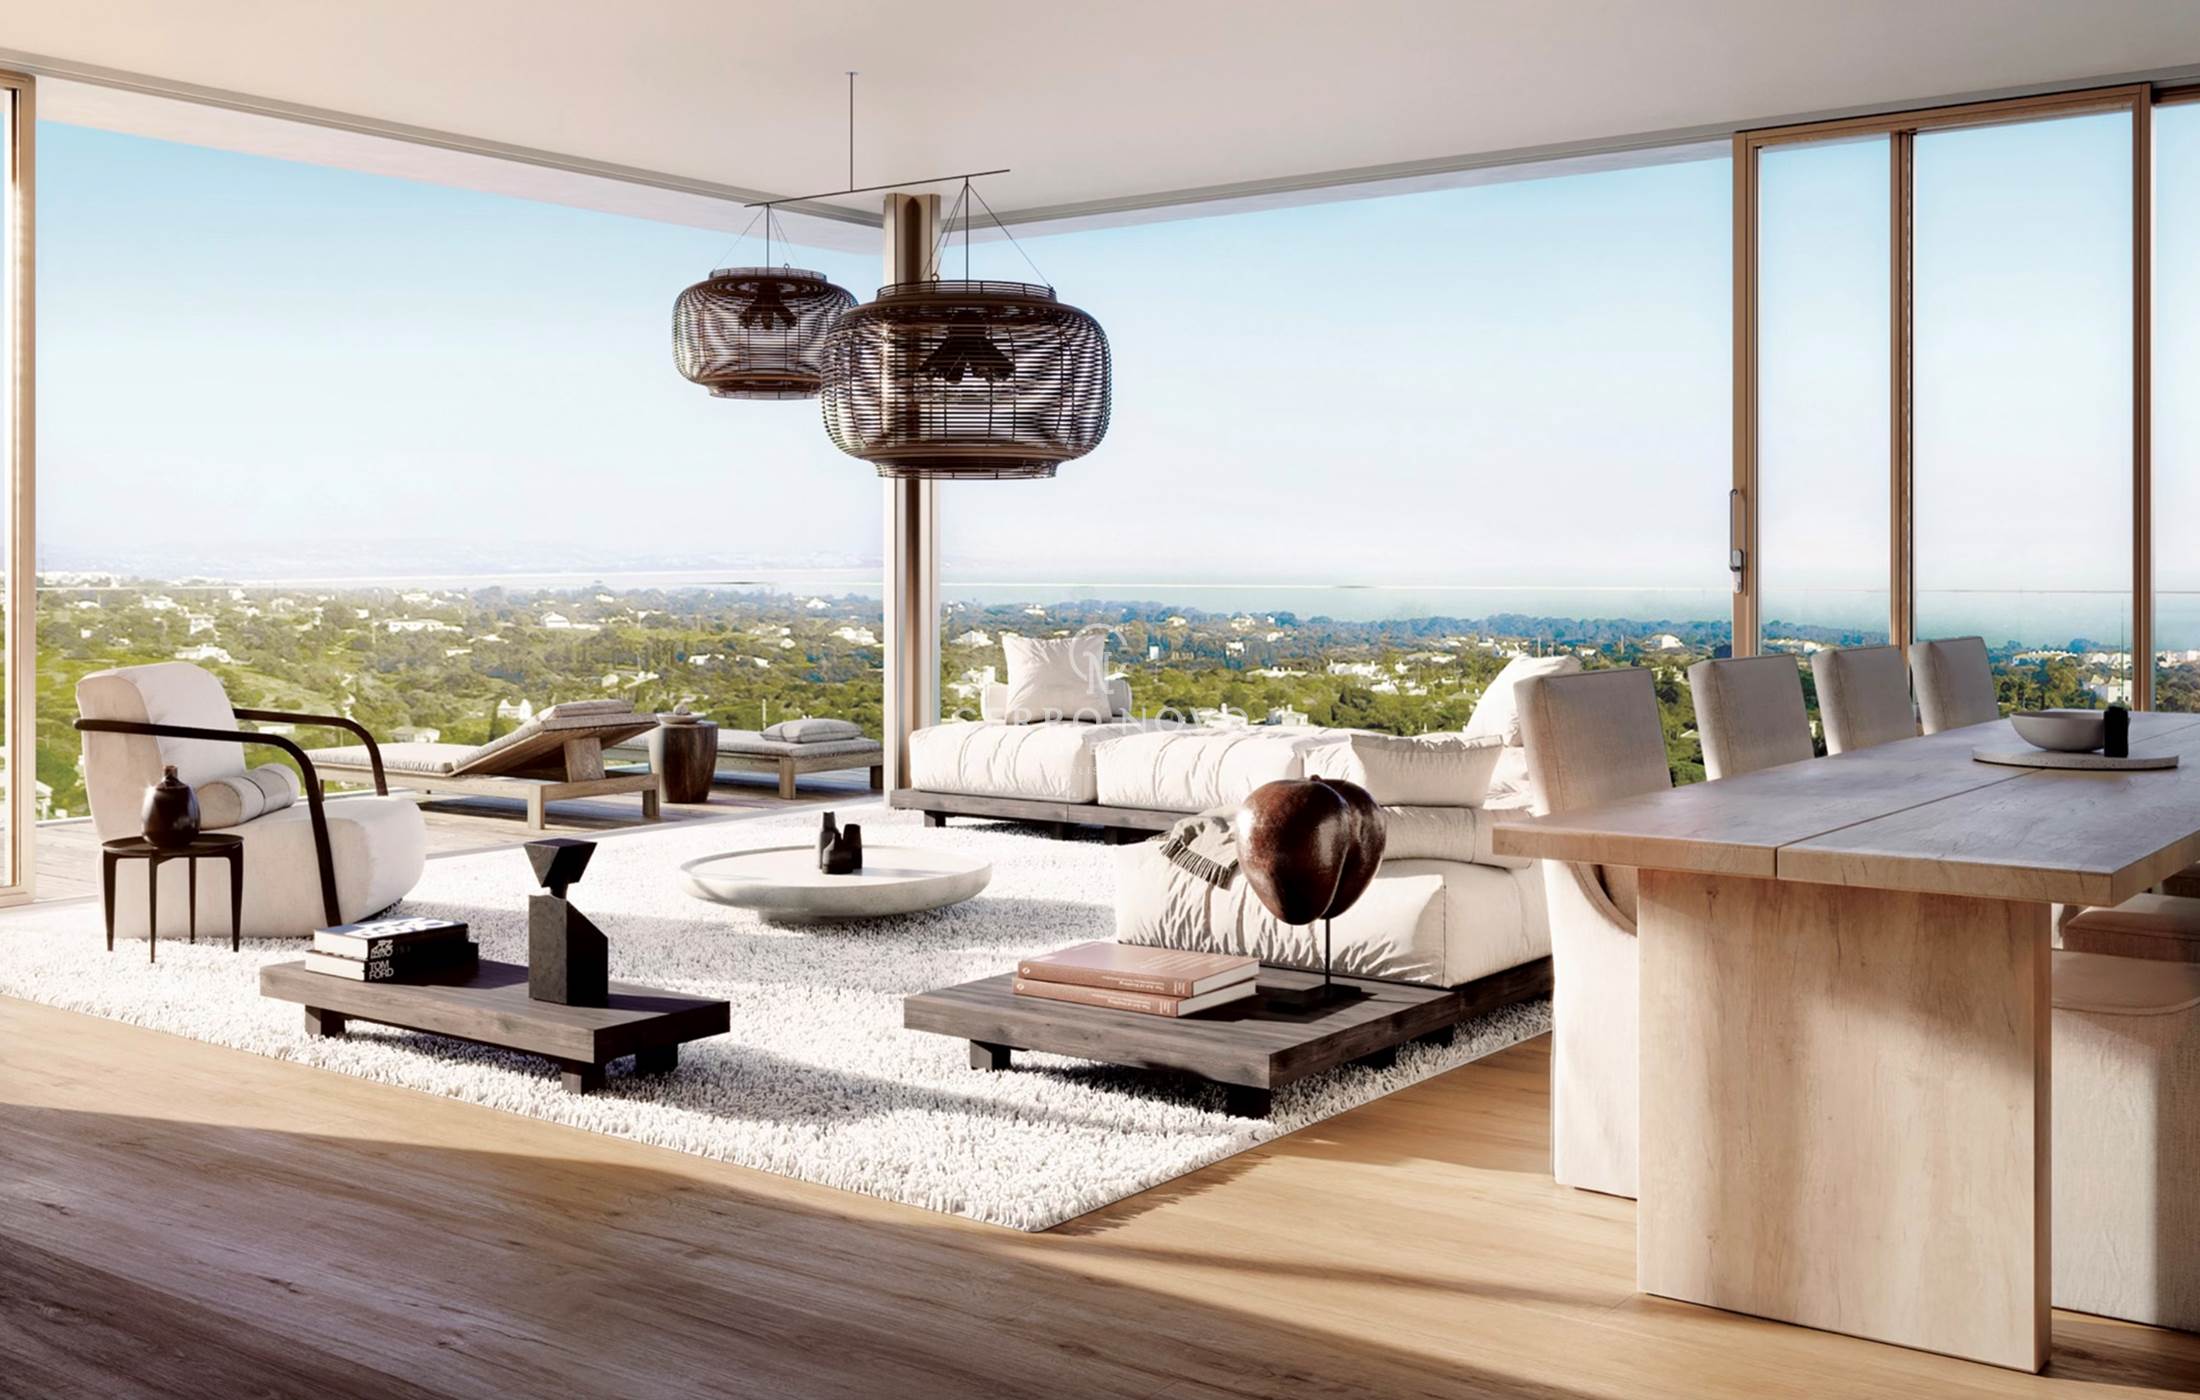 Fantastique Penthouse avec Piscine Privée Chauffée dans un Resort de Luxe